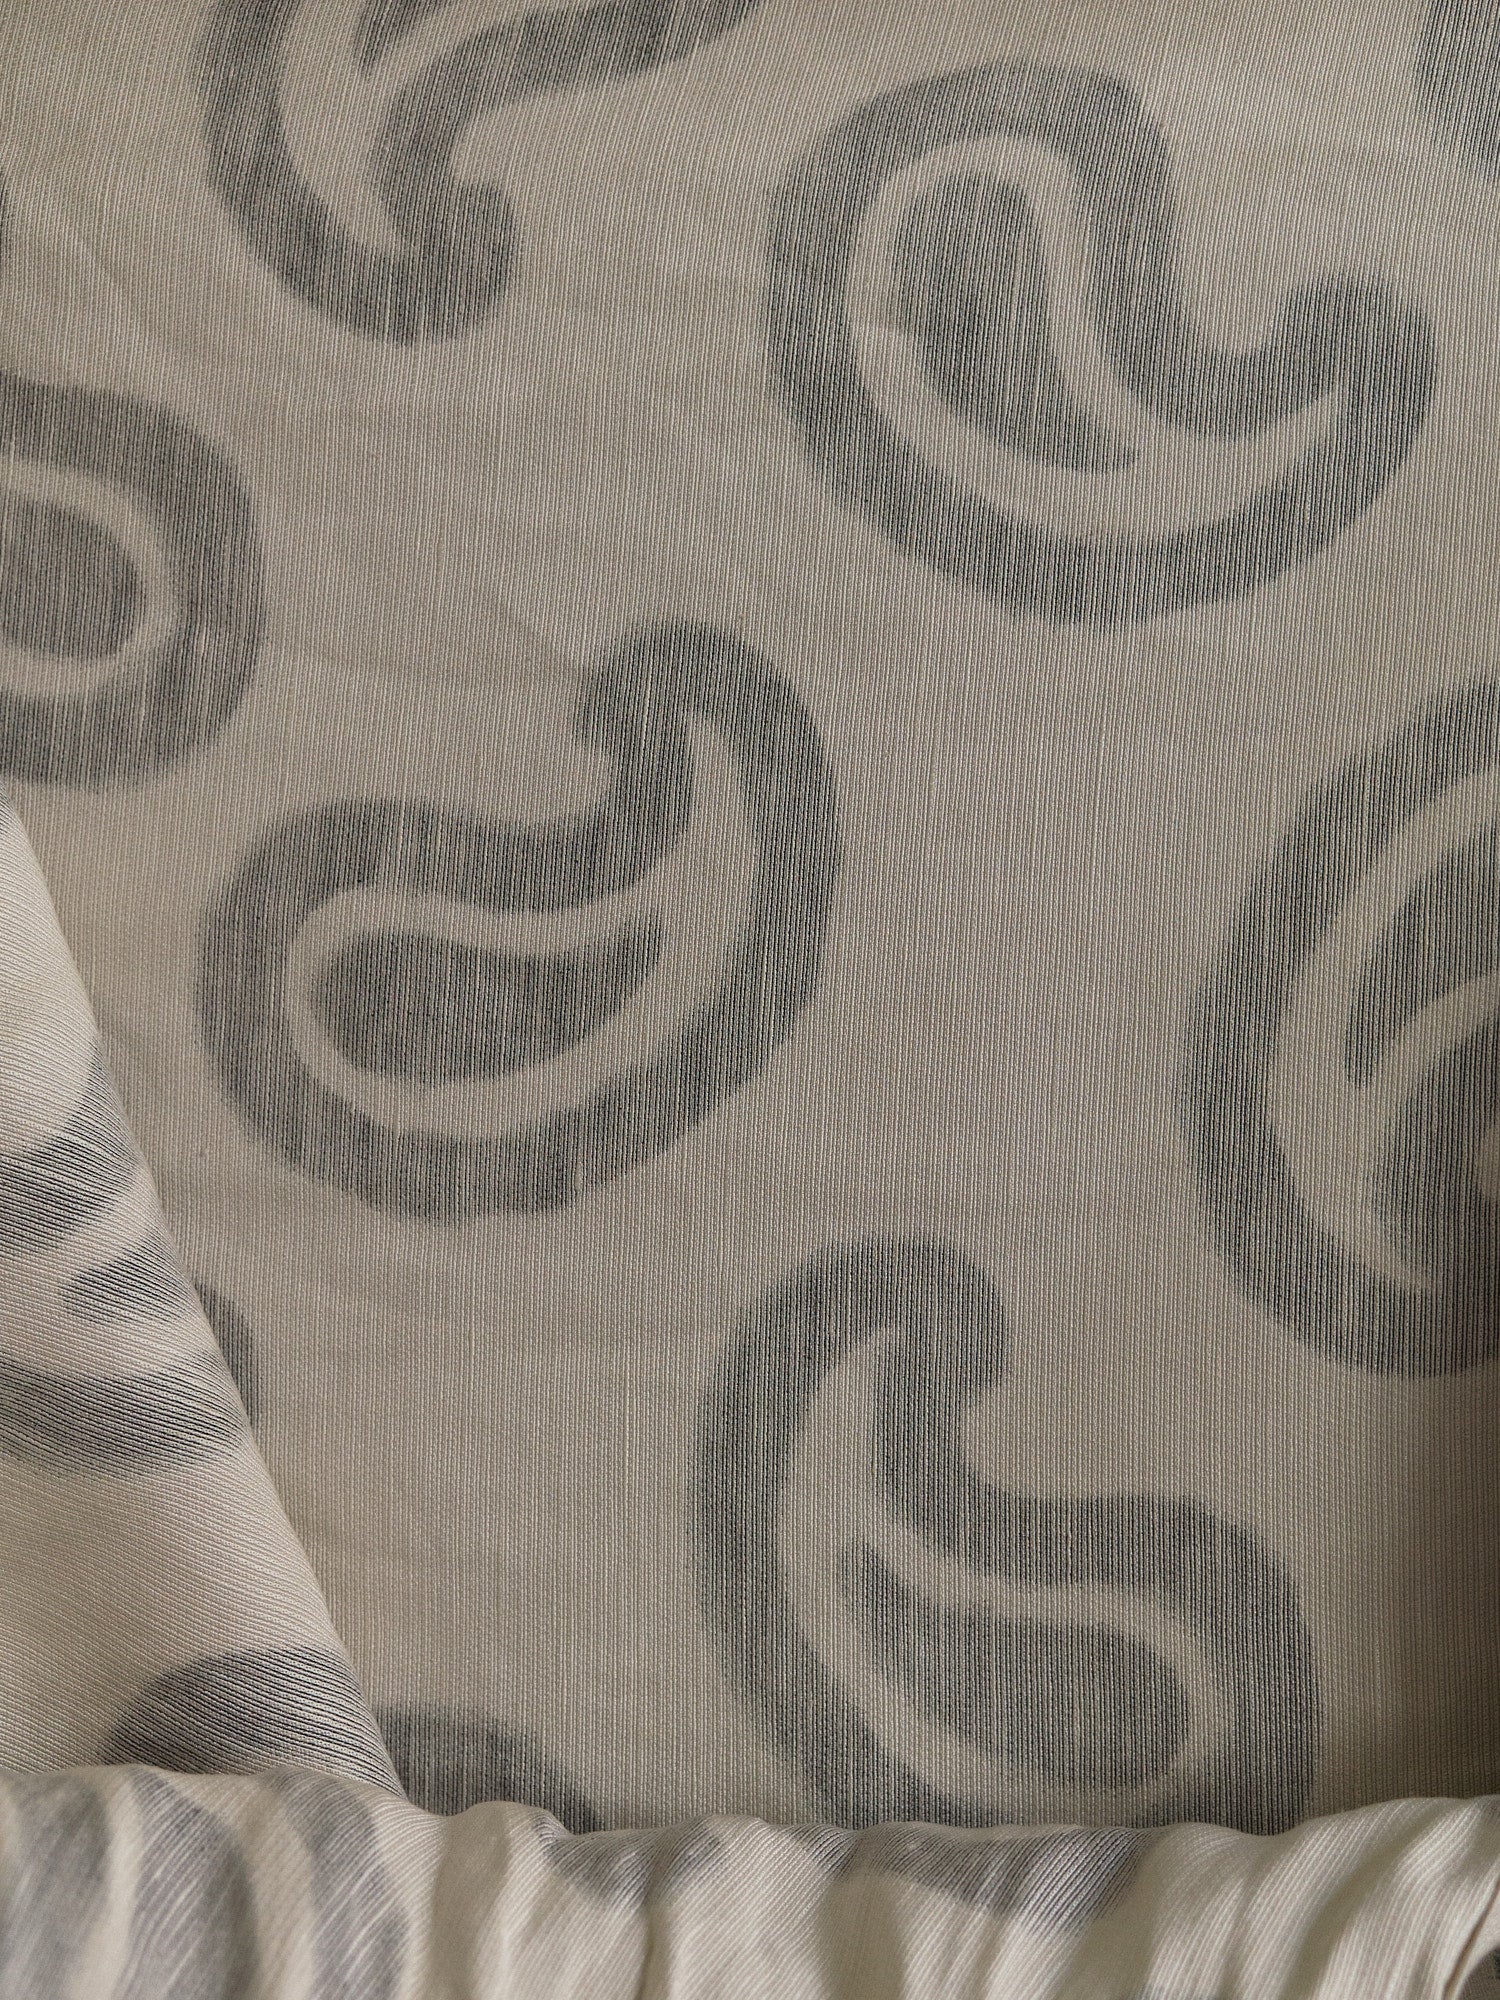 Dries Van Noten cream paisley patterned silk grosgrain tie neck dress - size 40